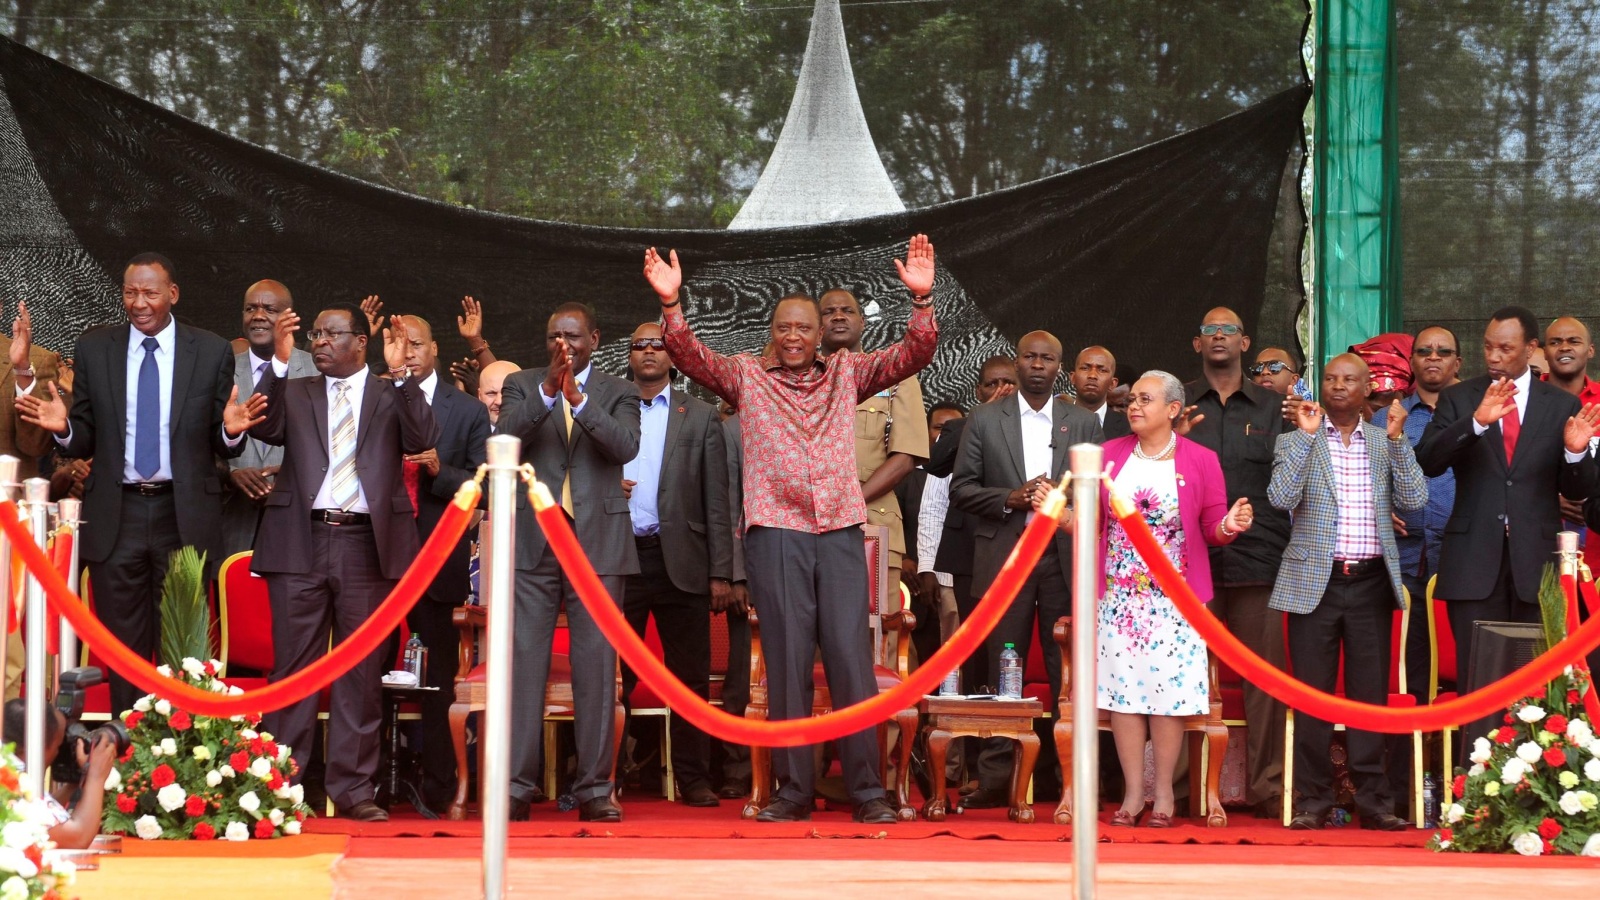 ‪الرئيس الكيني أثناء إعطائه إشارة انطلاق مسابقة للعدو في بلاده قبل أيام‬ (أسوشيتد برس)